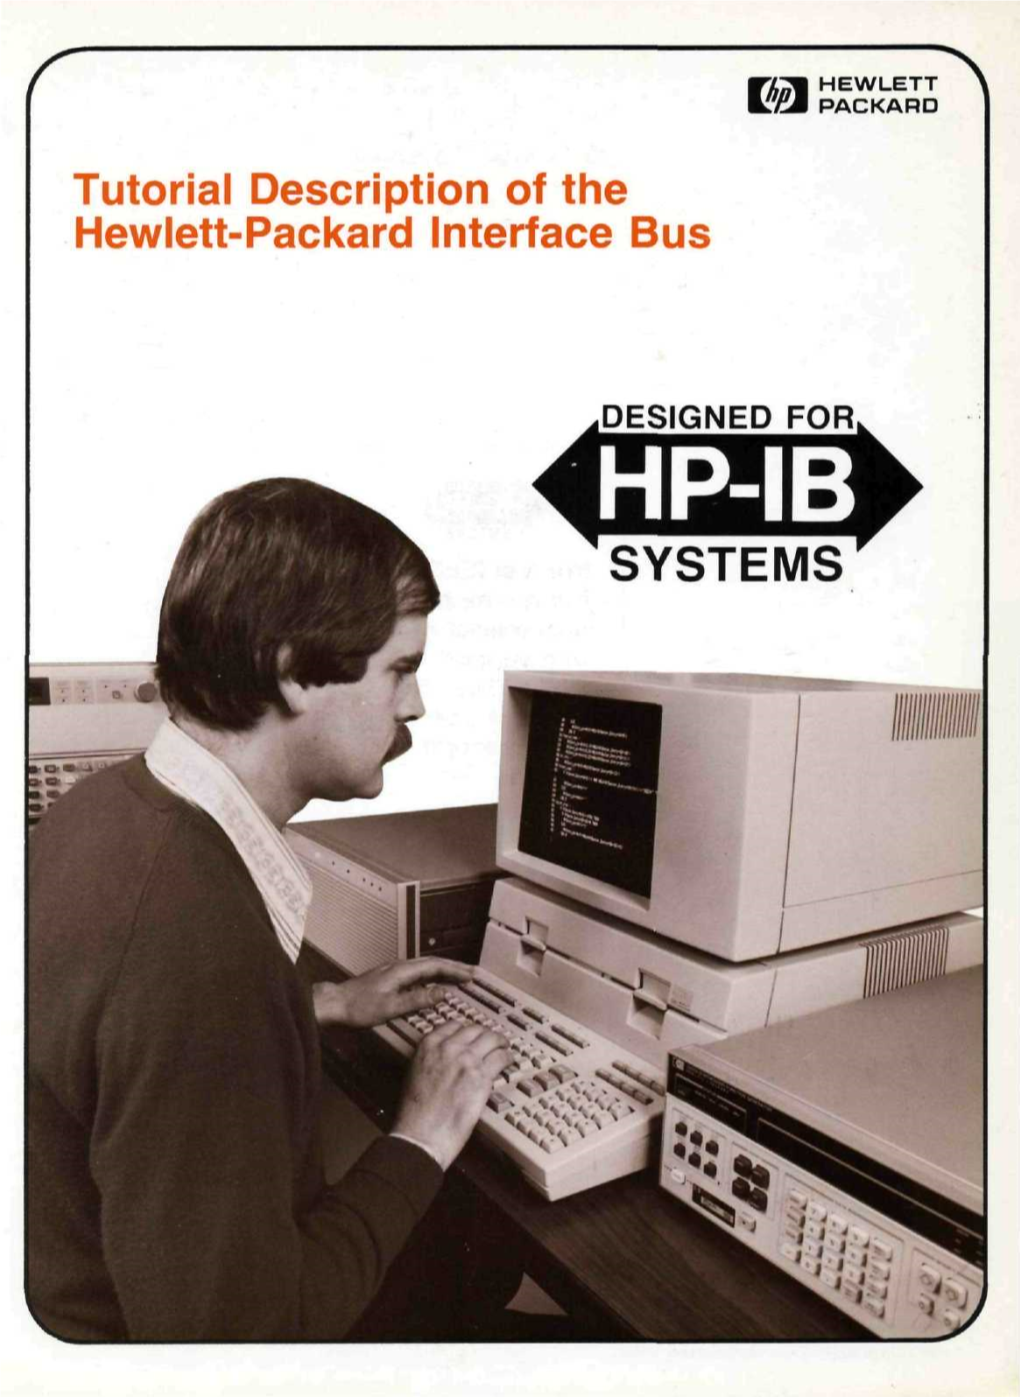 Tutorial Description of the Hewlett-Packard Interface Bus